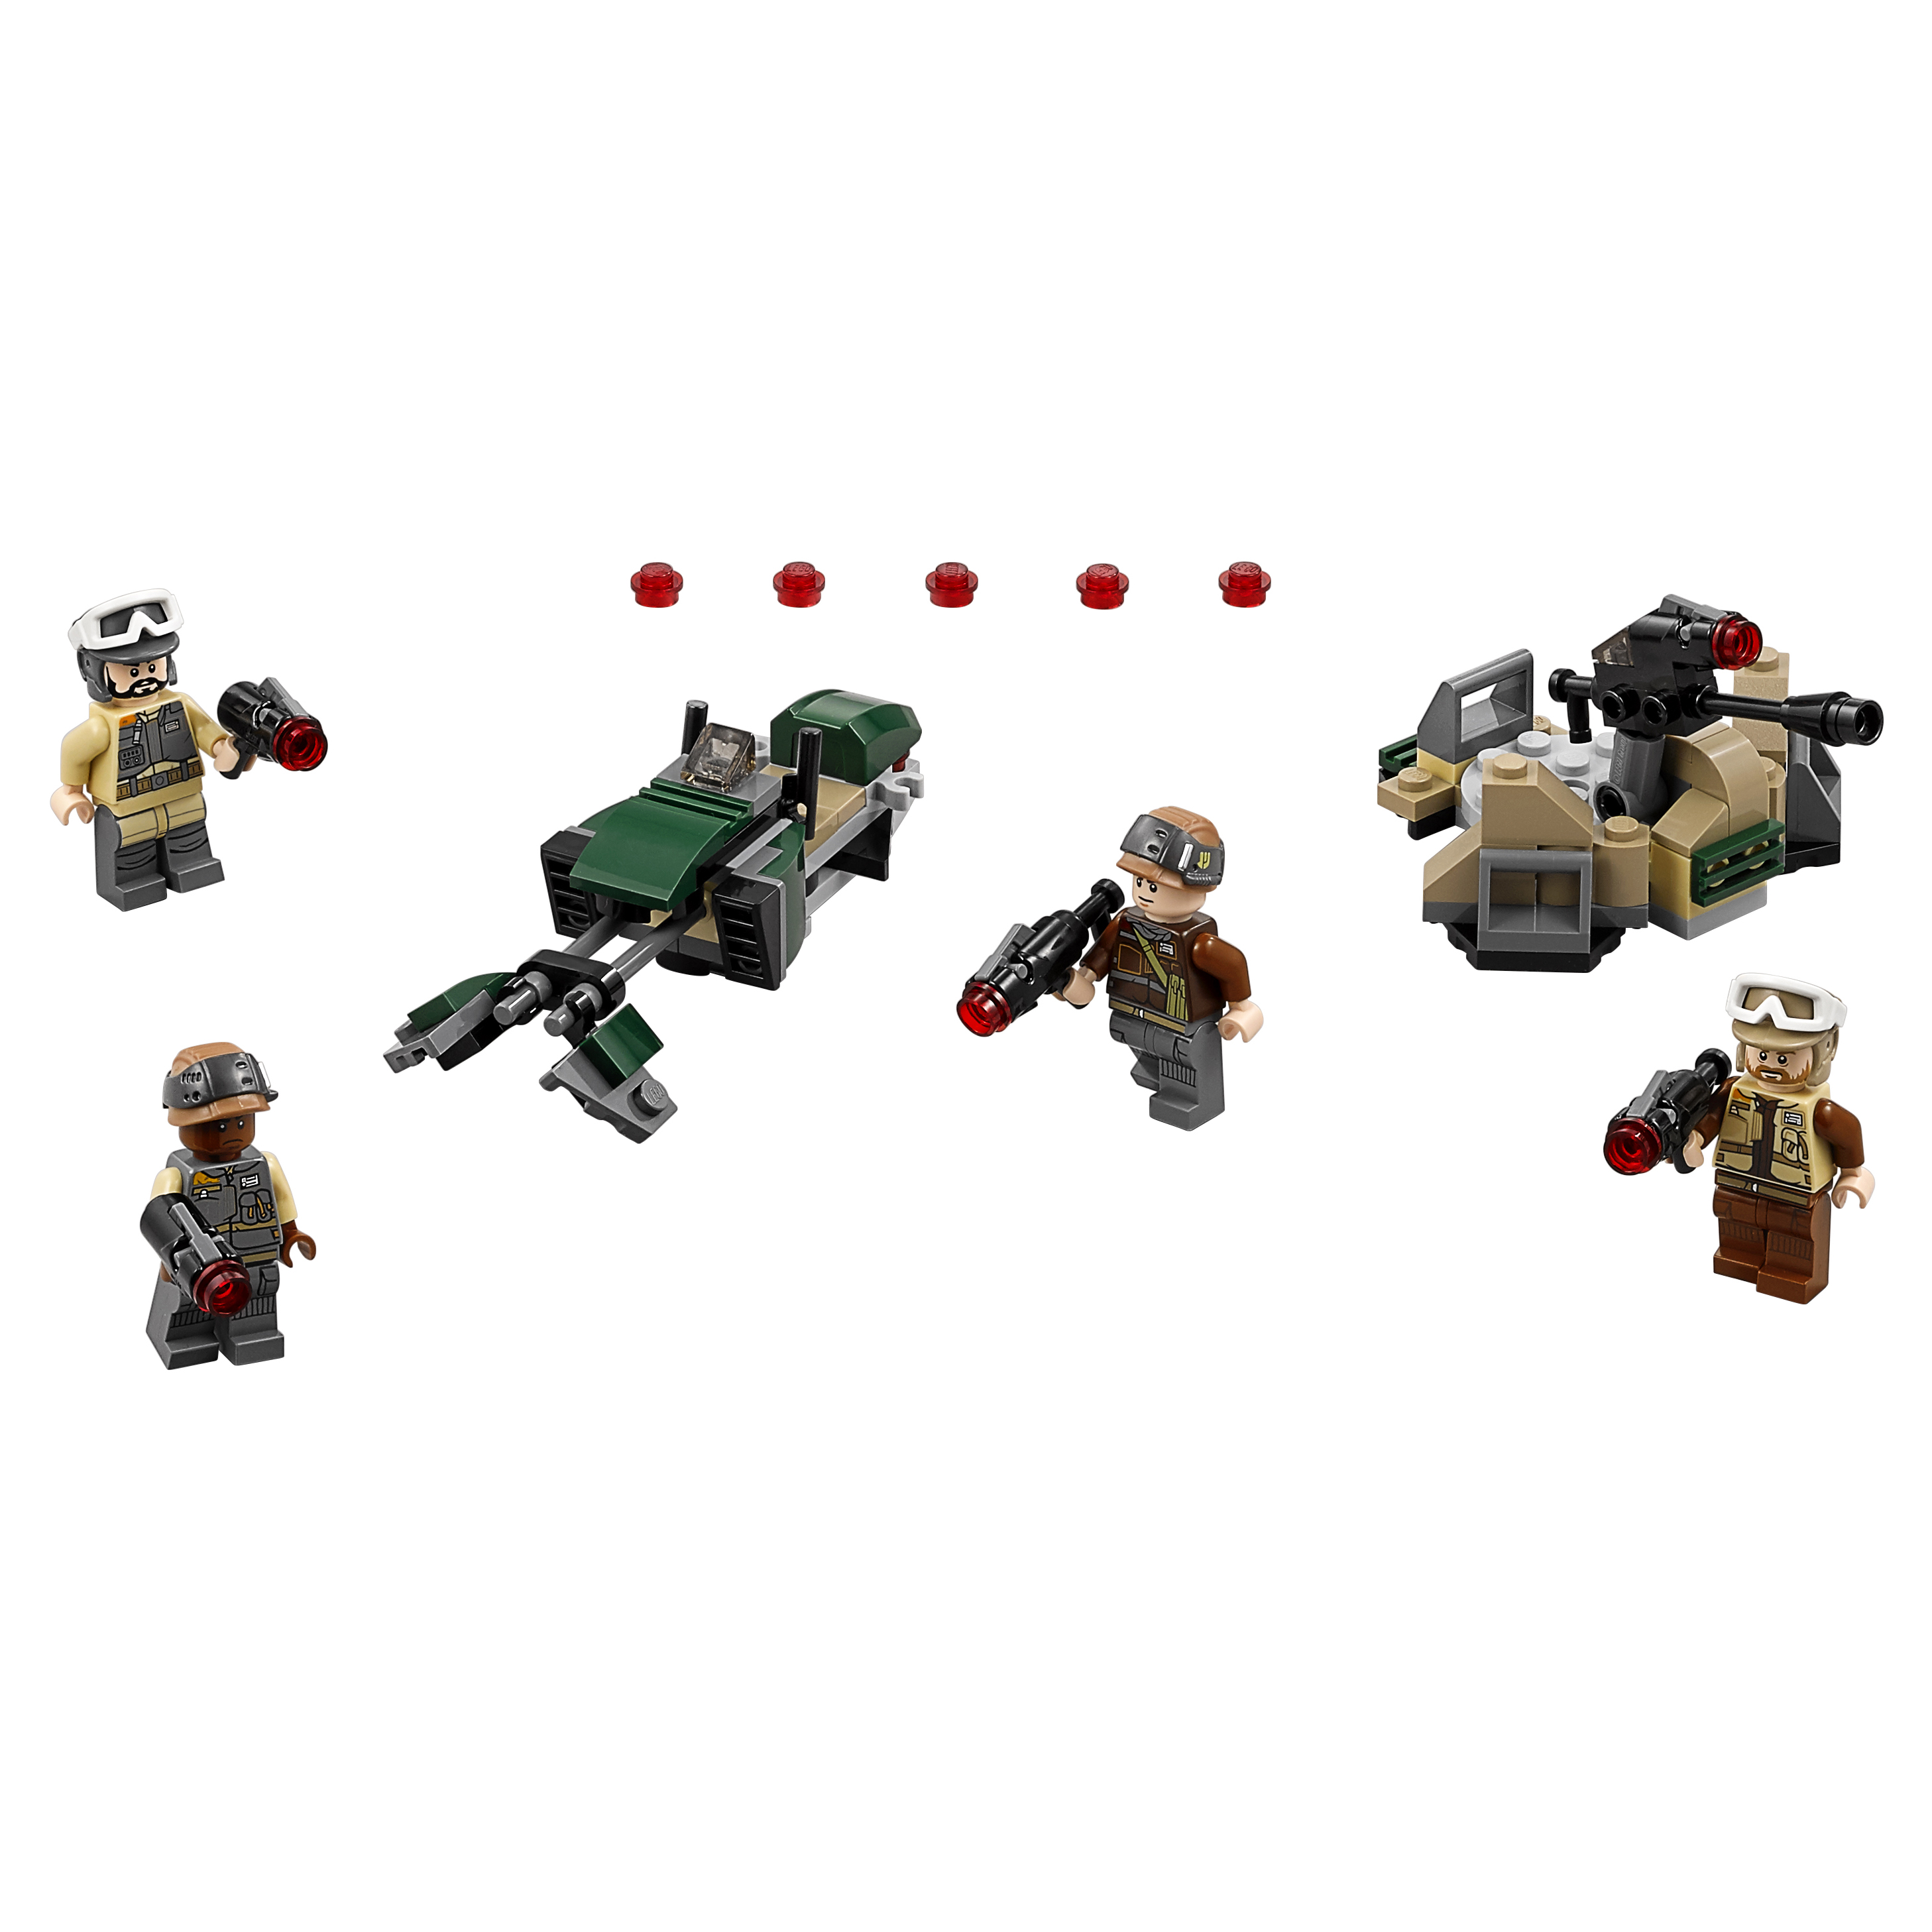 Конструктор LEGO Star Wars Боевой набор Повстанцев (75164) конструктор lego пластина 2 x 8 темно серый набор из 50 шт 4210997